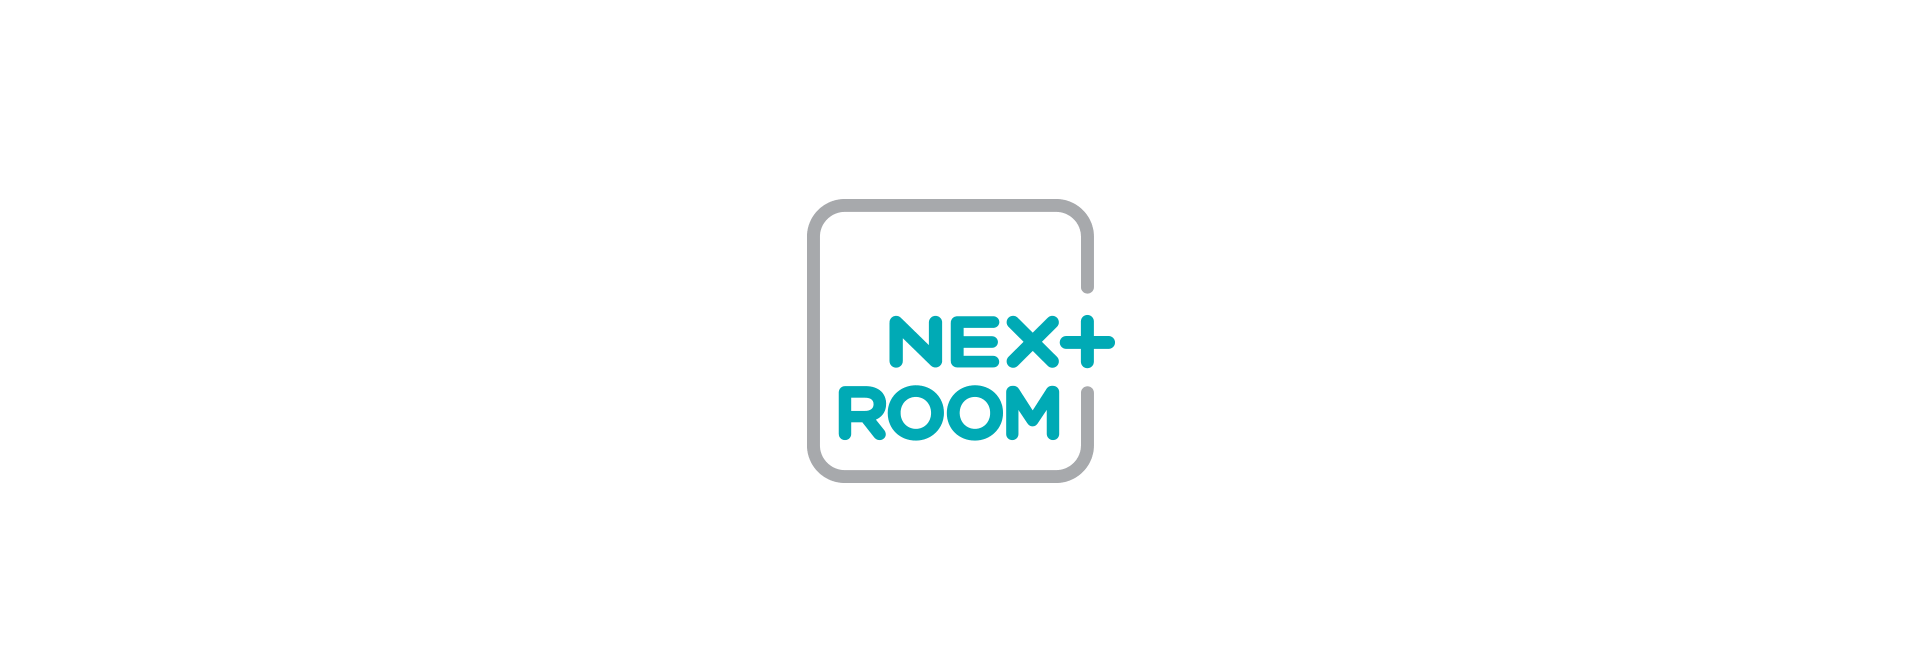 NextRoom final logo